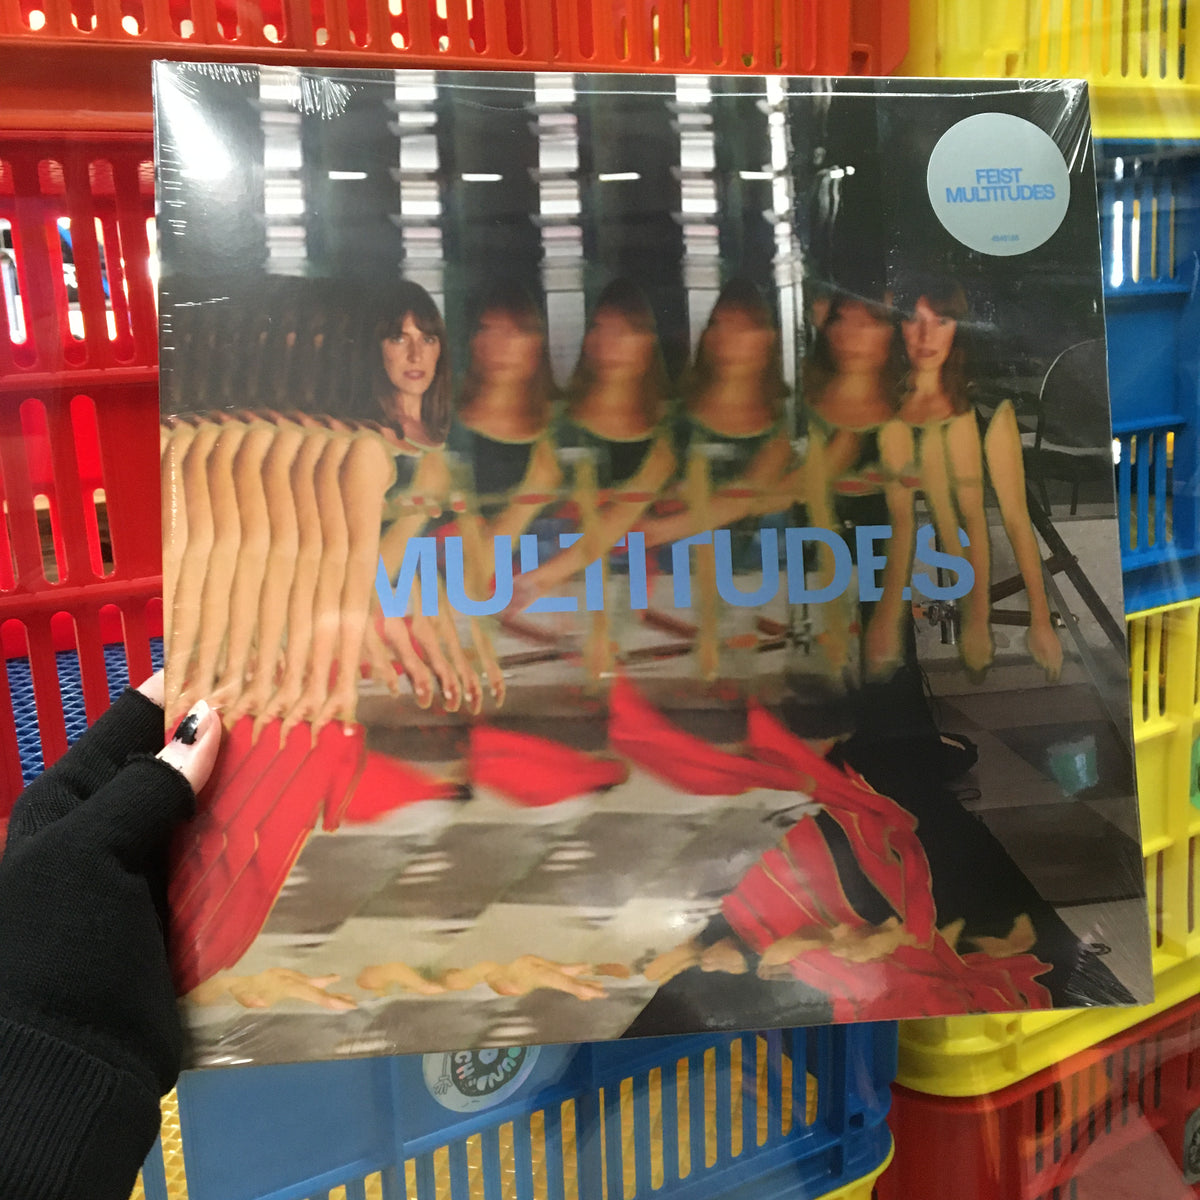 Feist / Multitudes LP Vinyl